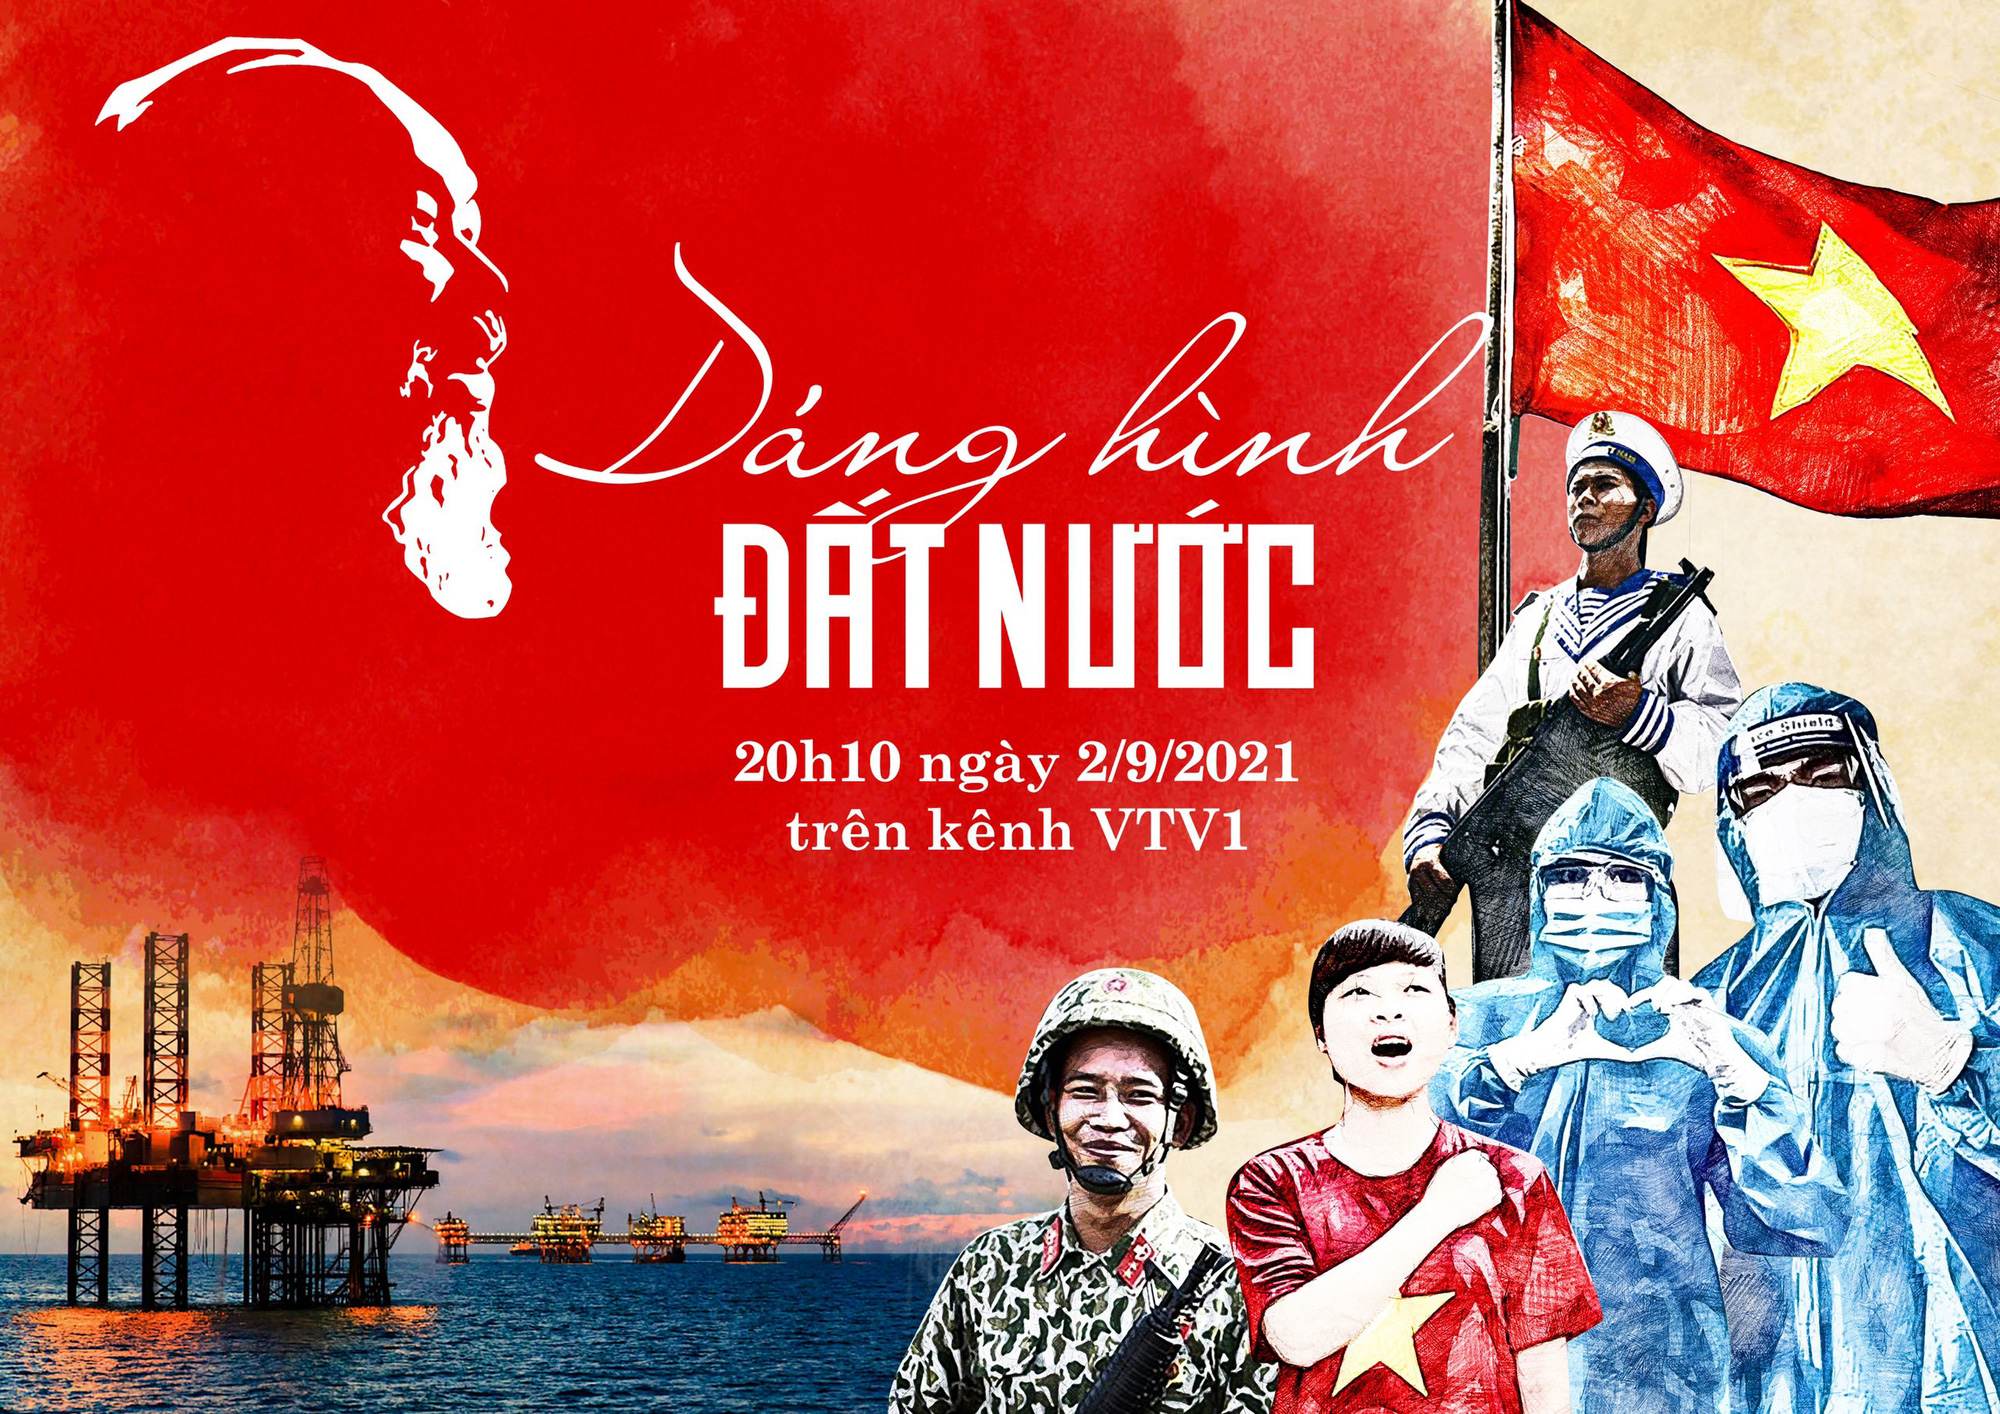 Nghệ thuật Dáng hình đất nước - Sự tài hoa và sáng tạo của nghệ thuật Dáng hình đất nước sẽ thu hút bạn ngay từ chi tiết nhỏ nhất. Cùng chiêm ngưỡng những tác phẩm sáng tạo và cảm nhận sự độc đáo của nghệ thuật Việt Nam.